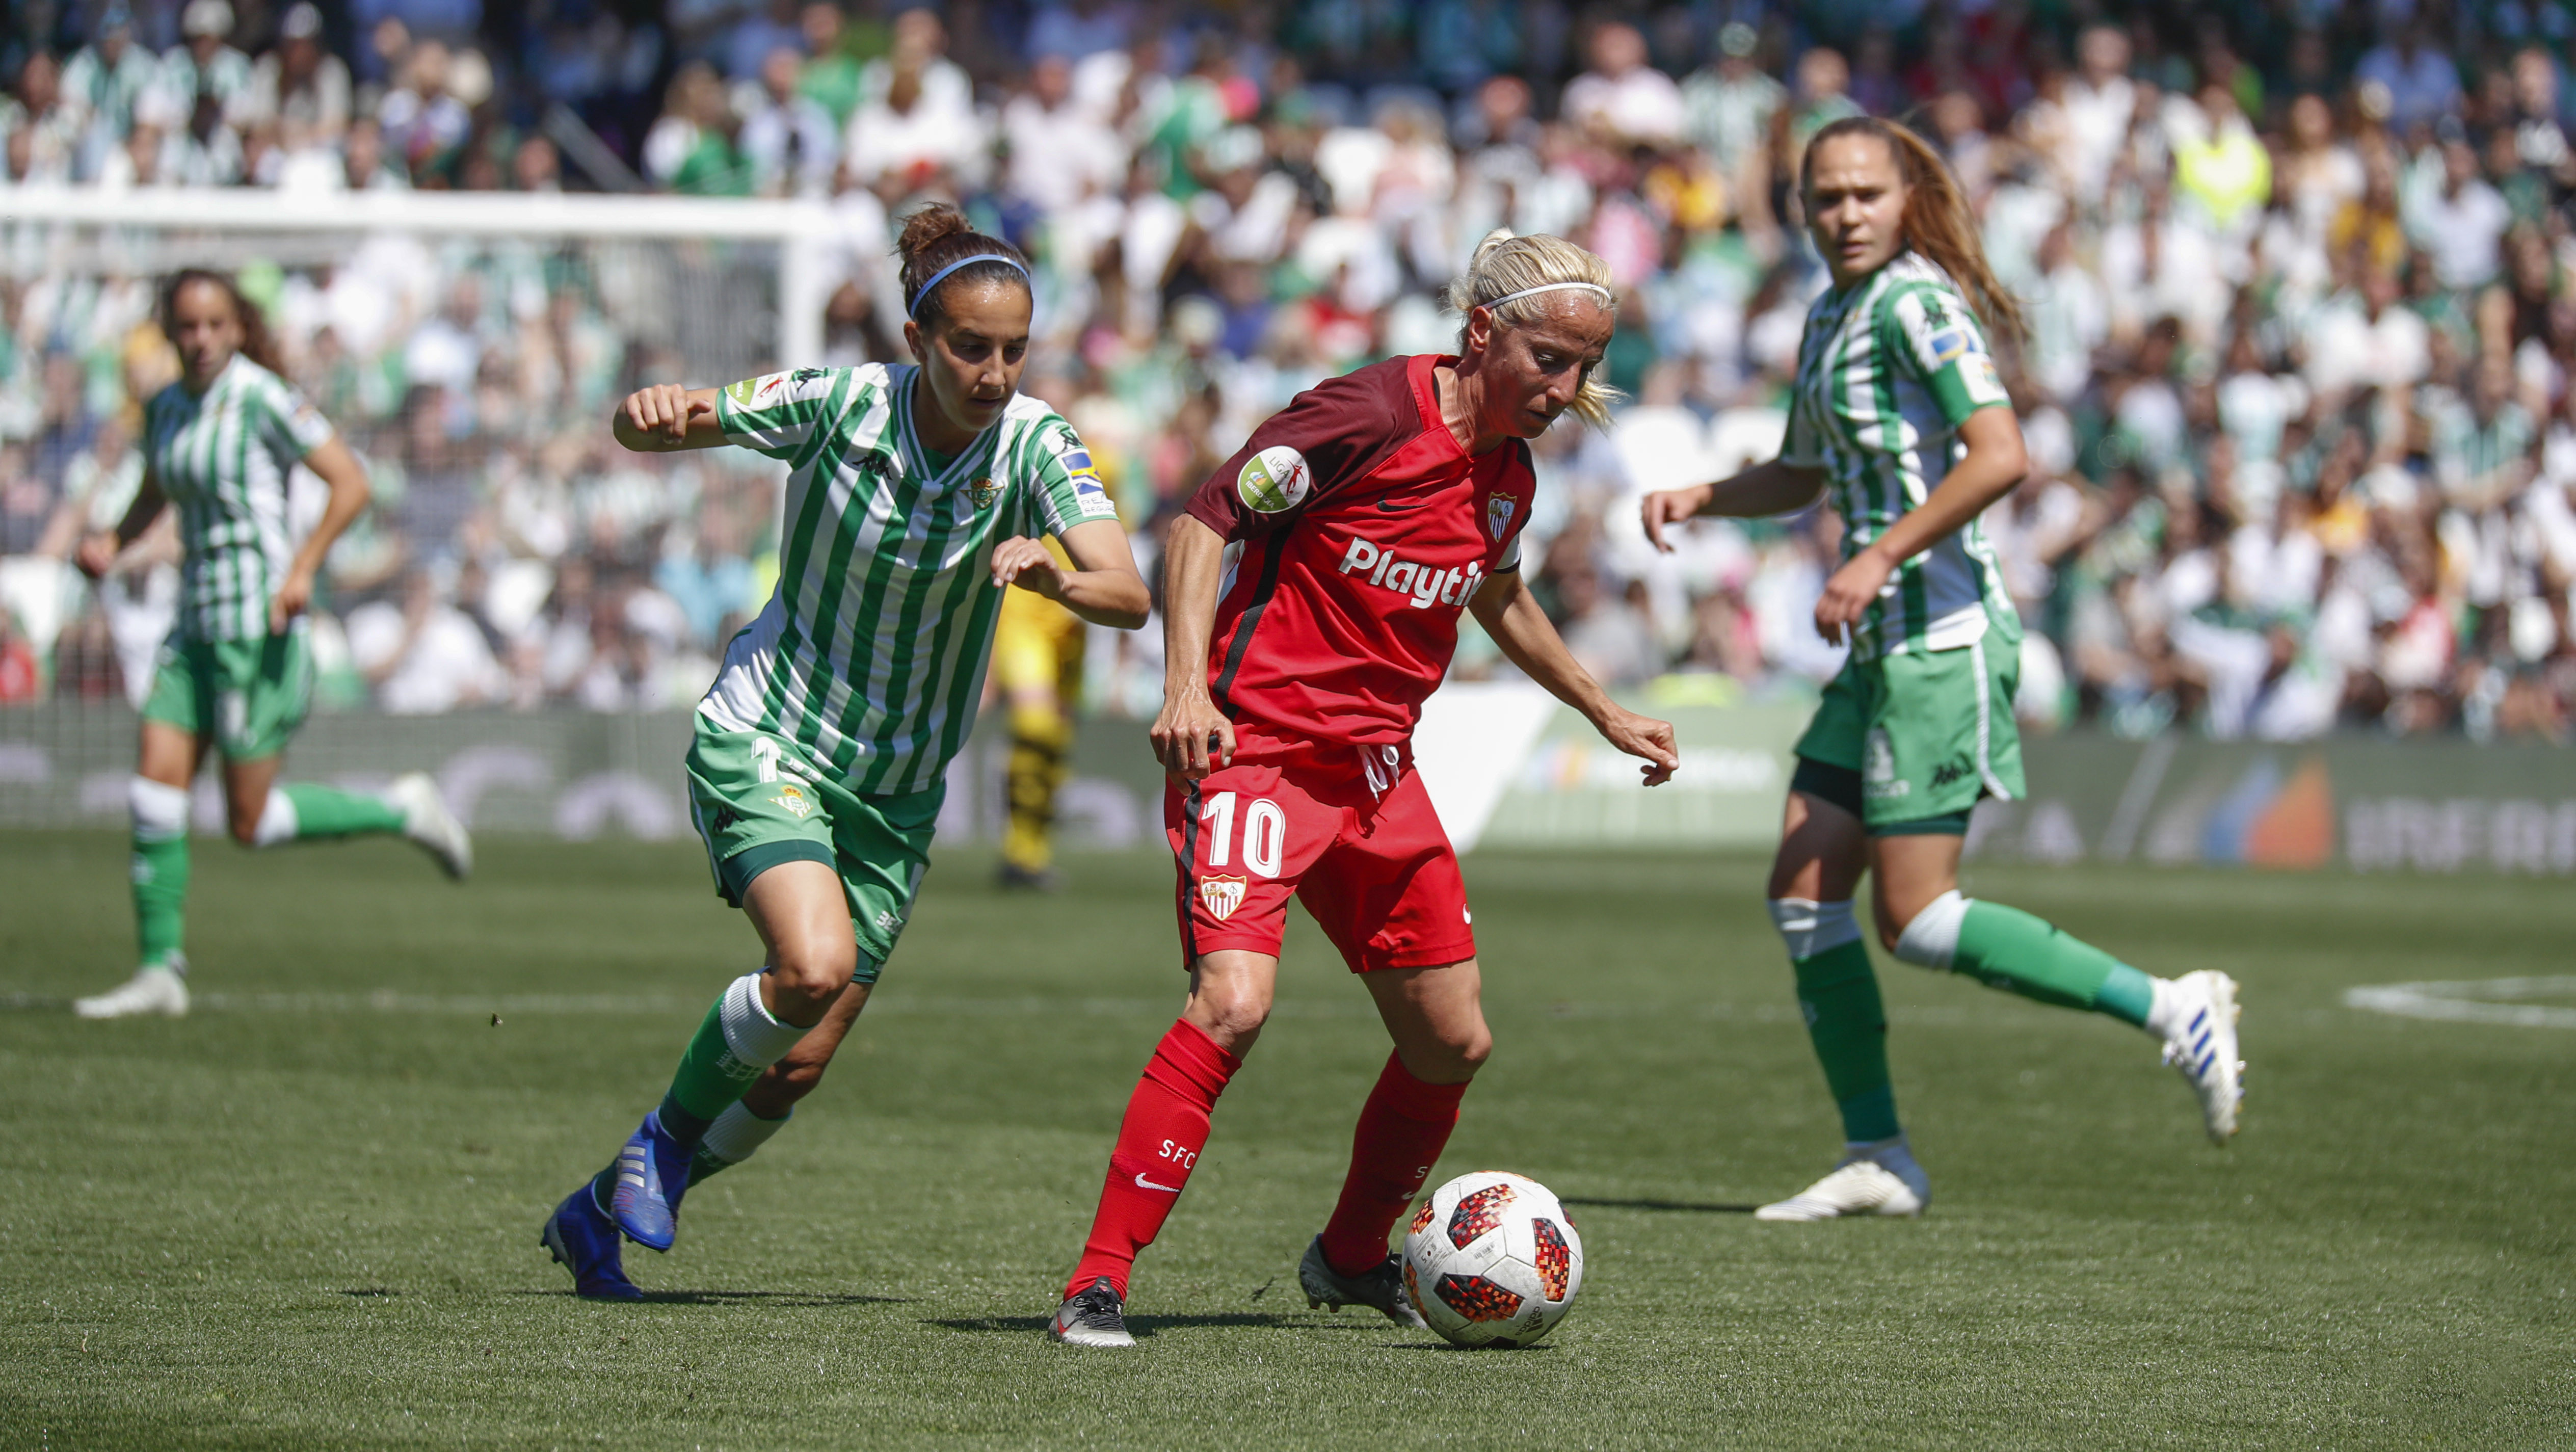 Alicia Fuentes, capitana del primer equipo femenino del Sevilla FC, controla el balón durante la disputa de El Gran Derbi el pasado sábado en la Liga Iberdrola